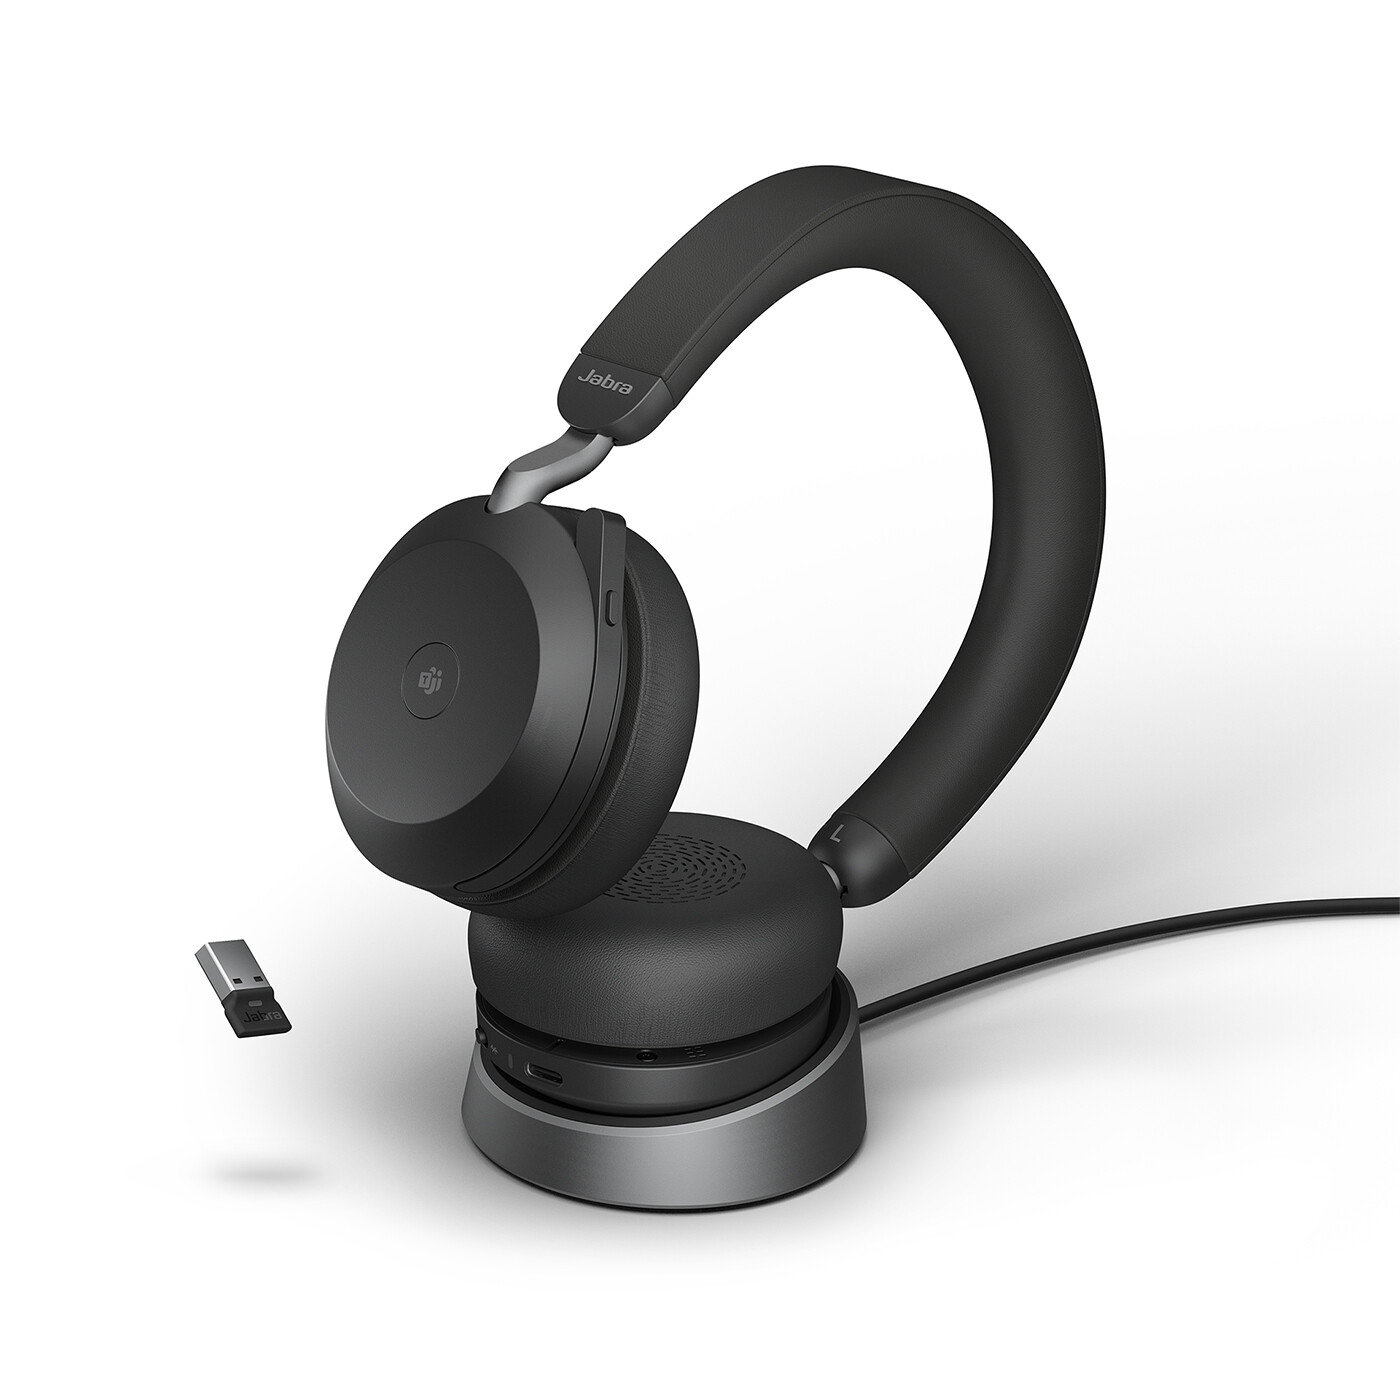 Jabra-Evolve2-75-draadloos-Stereo-Headset-voor-MS-met-Desk-Stand-Bluetooth-USB-A-aansluiting-zwart